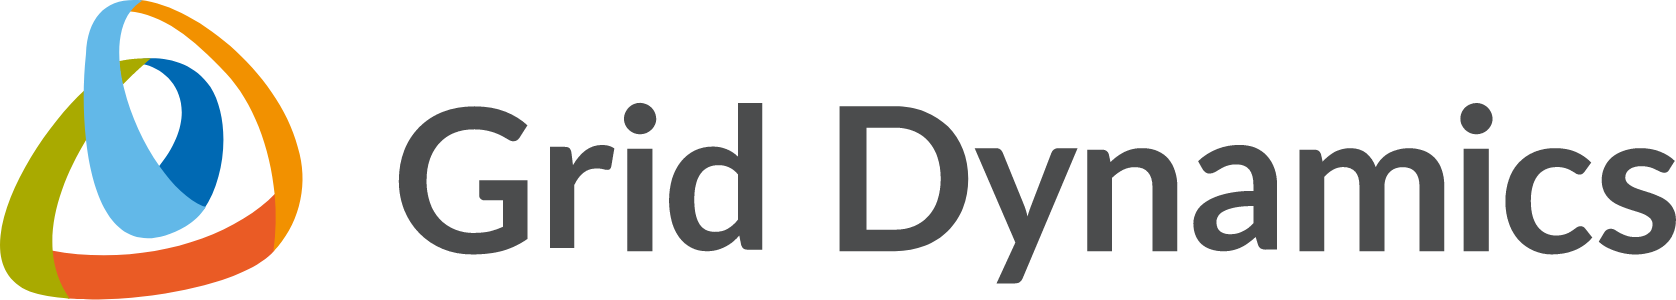 Grid Dynamics Logo